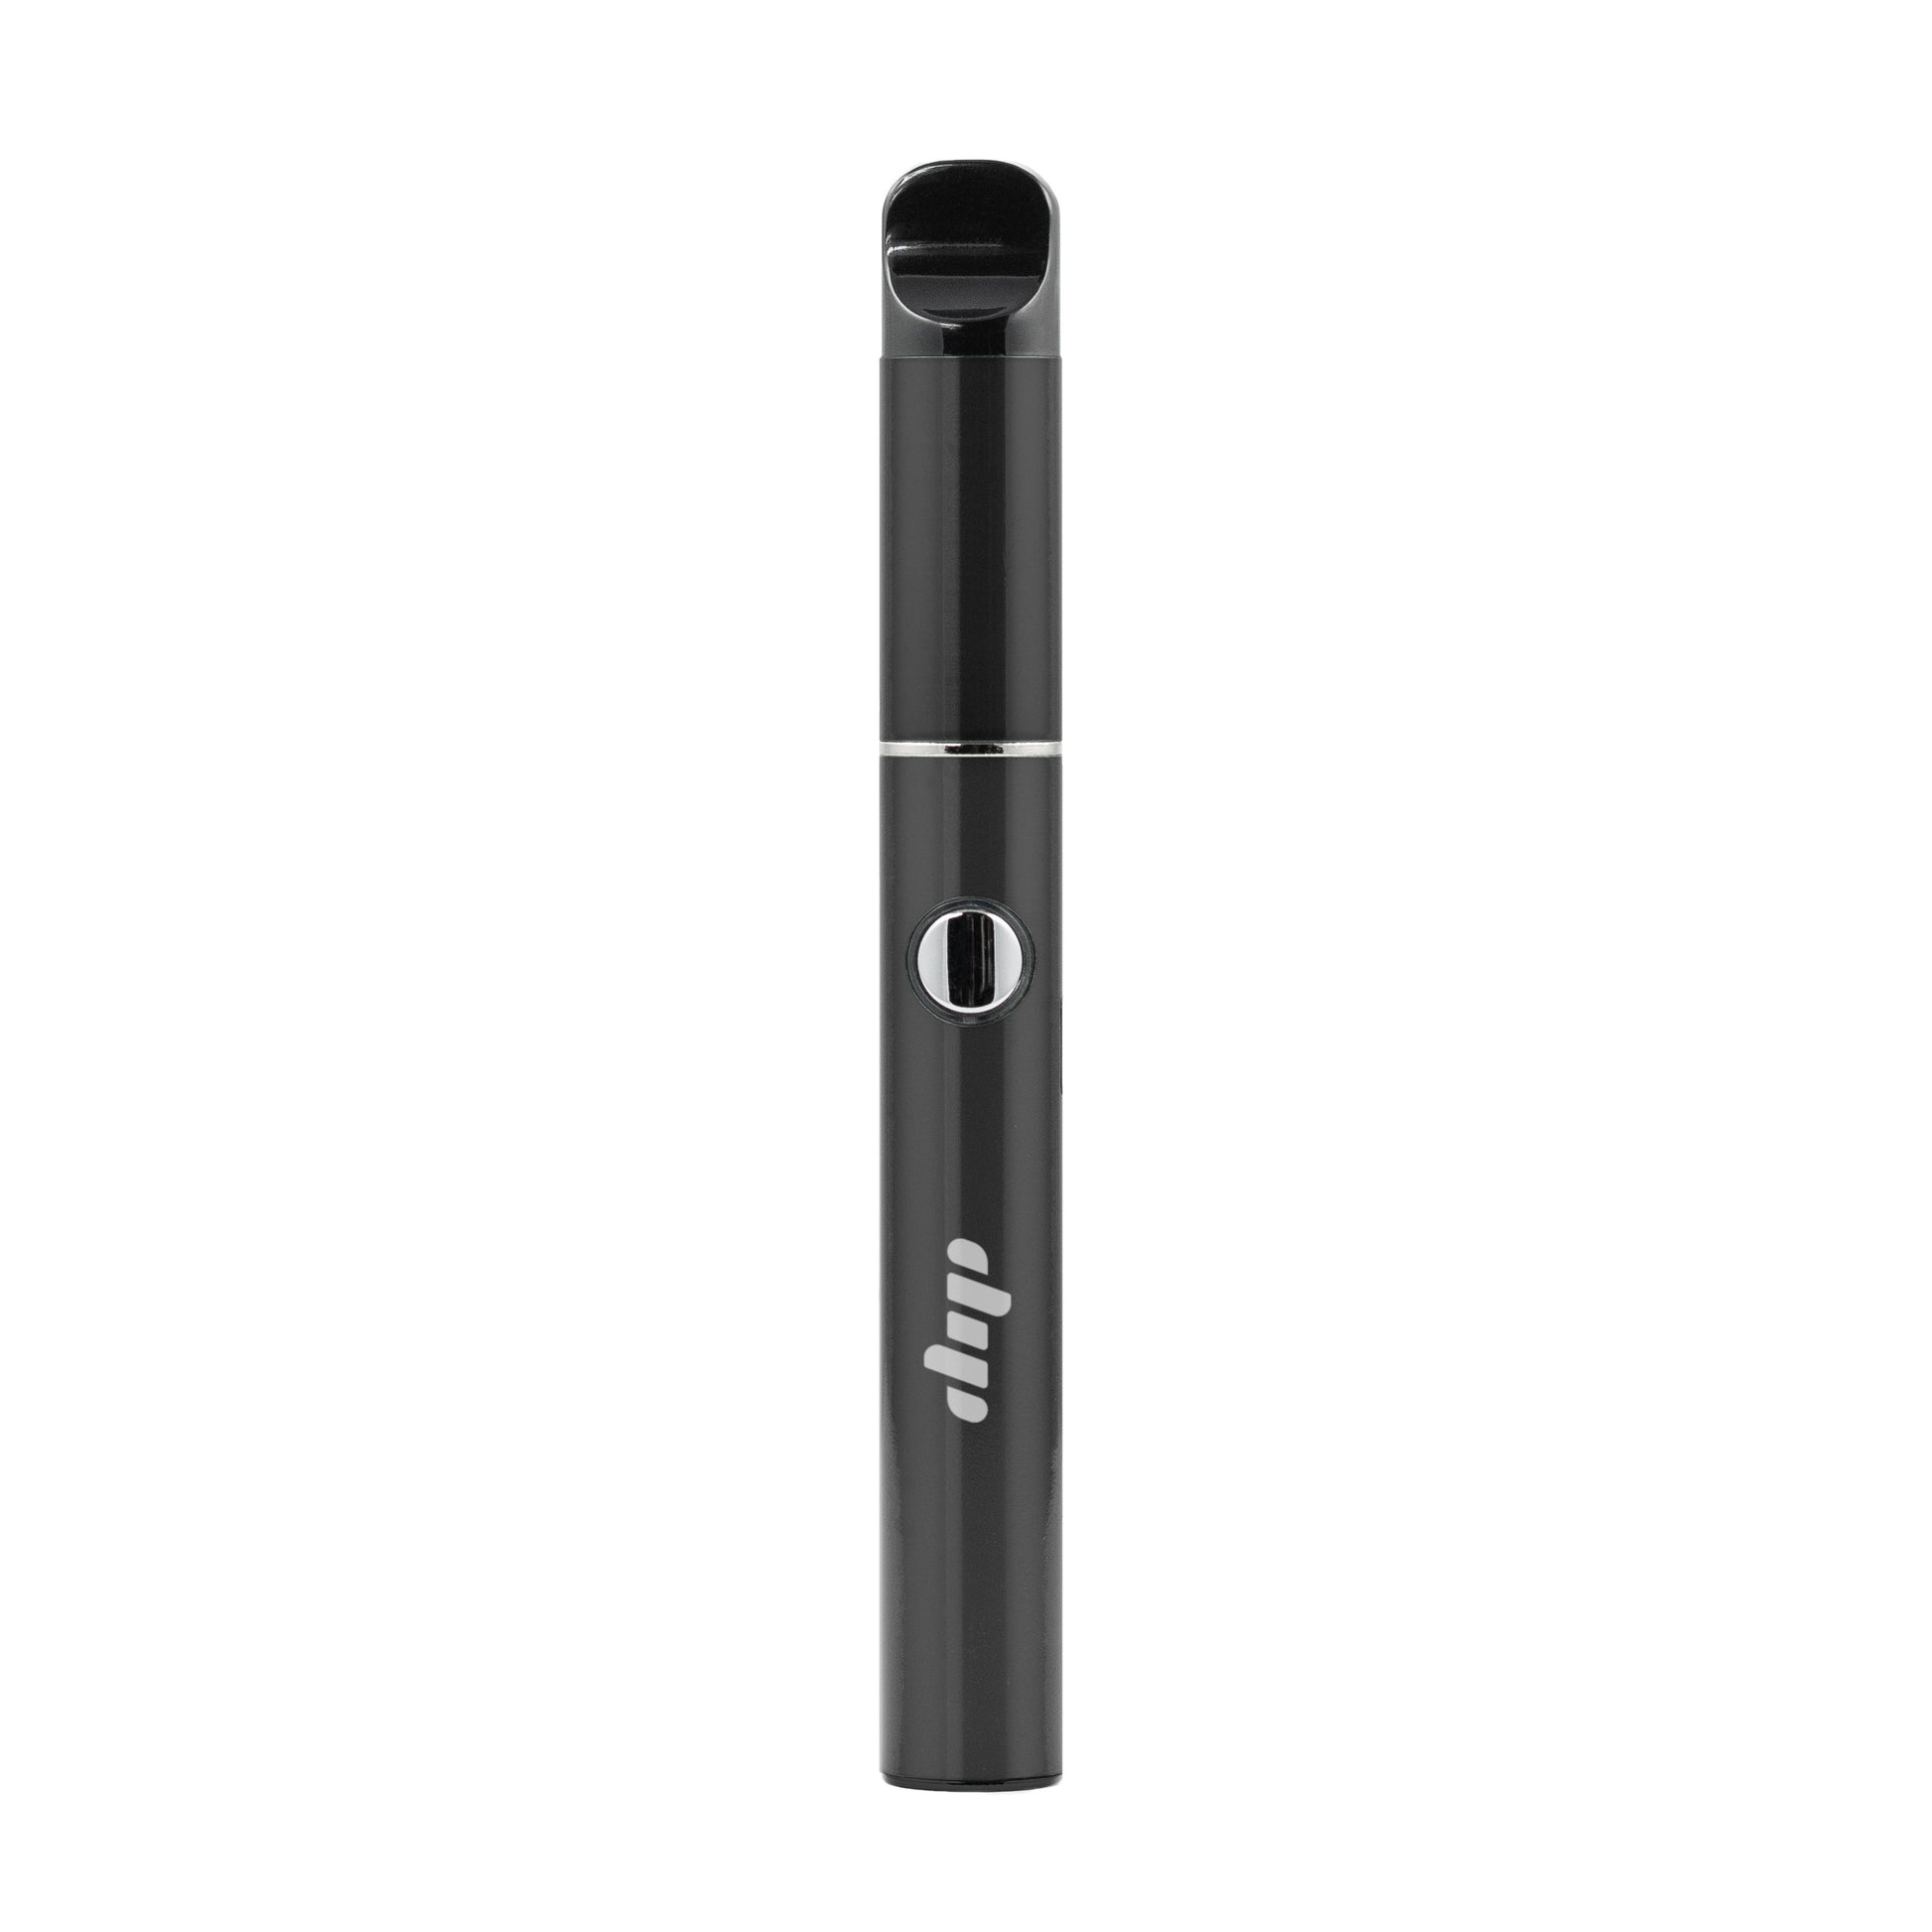 Lunar black, sleek vape pen from dip devices